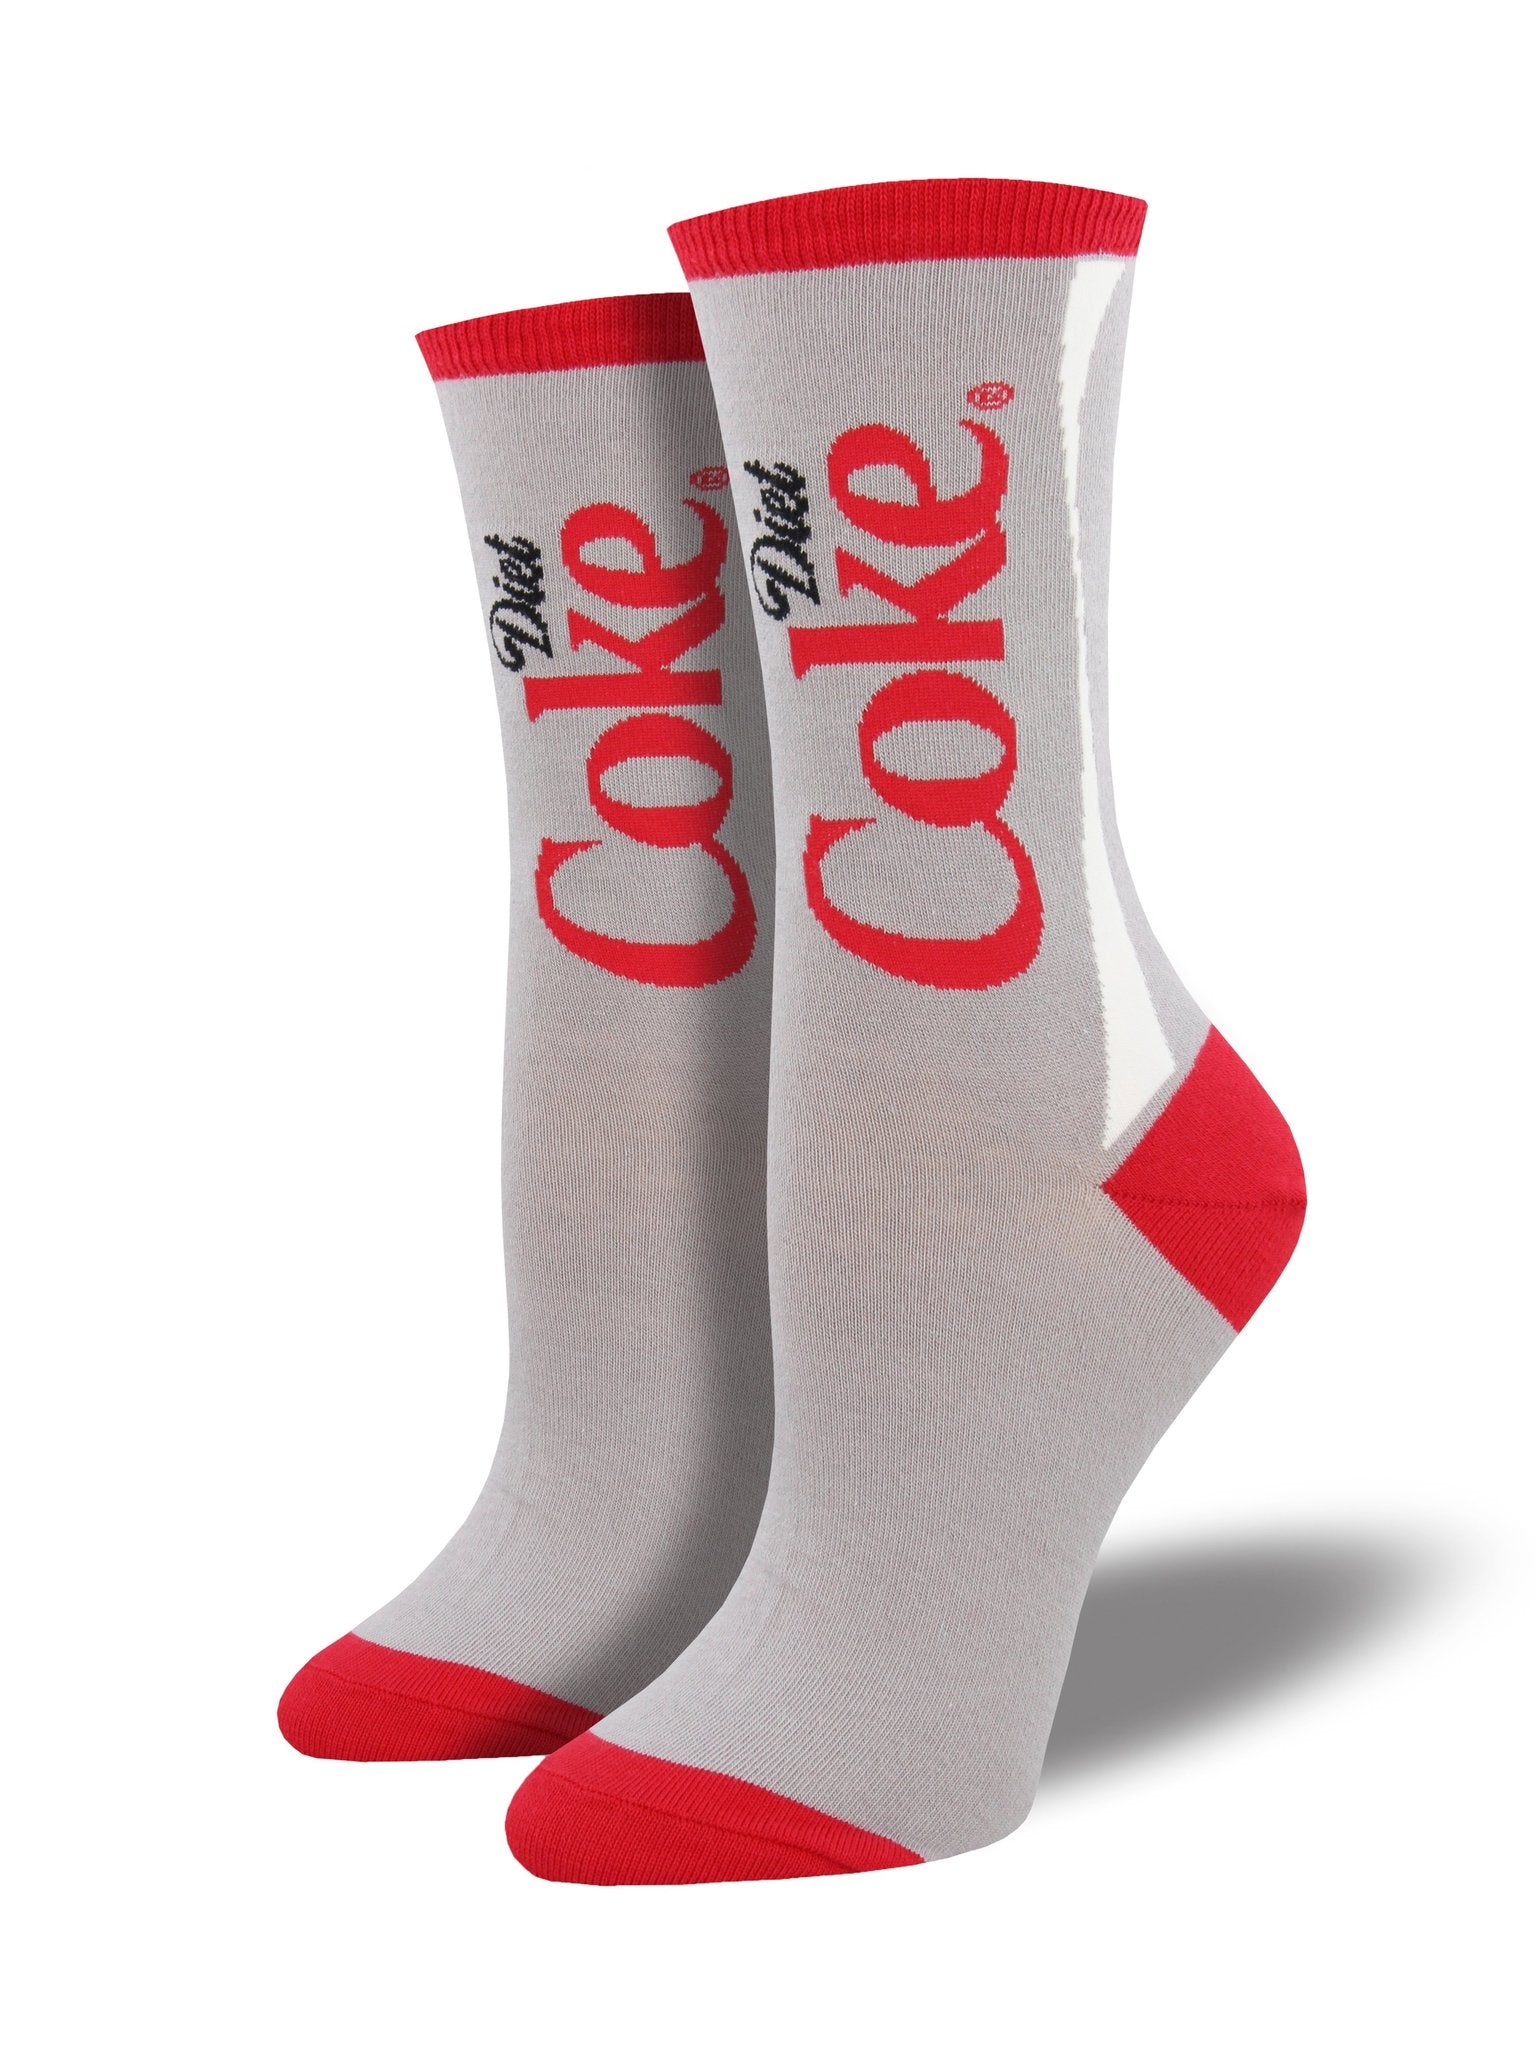 Socksmith Women's "Diet Coke" Crew Socks